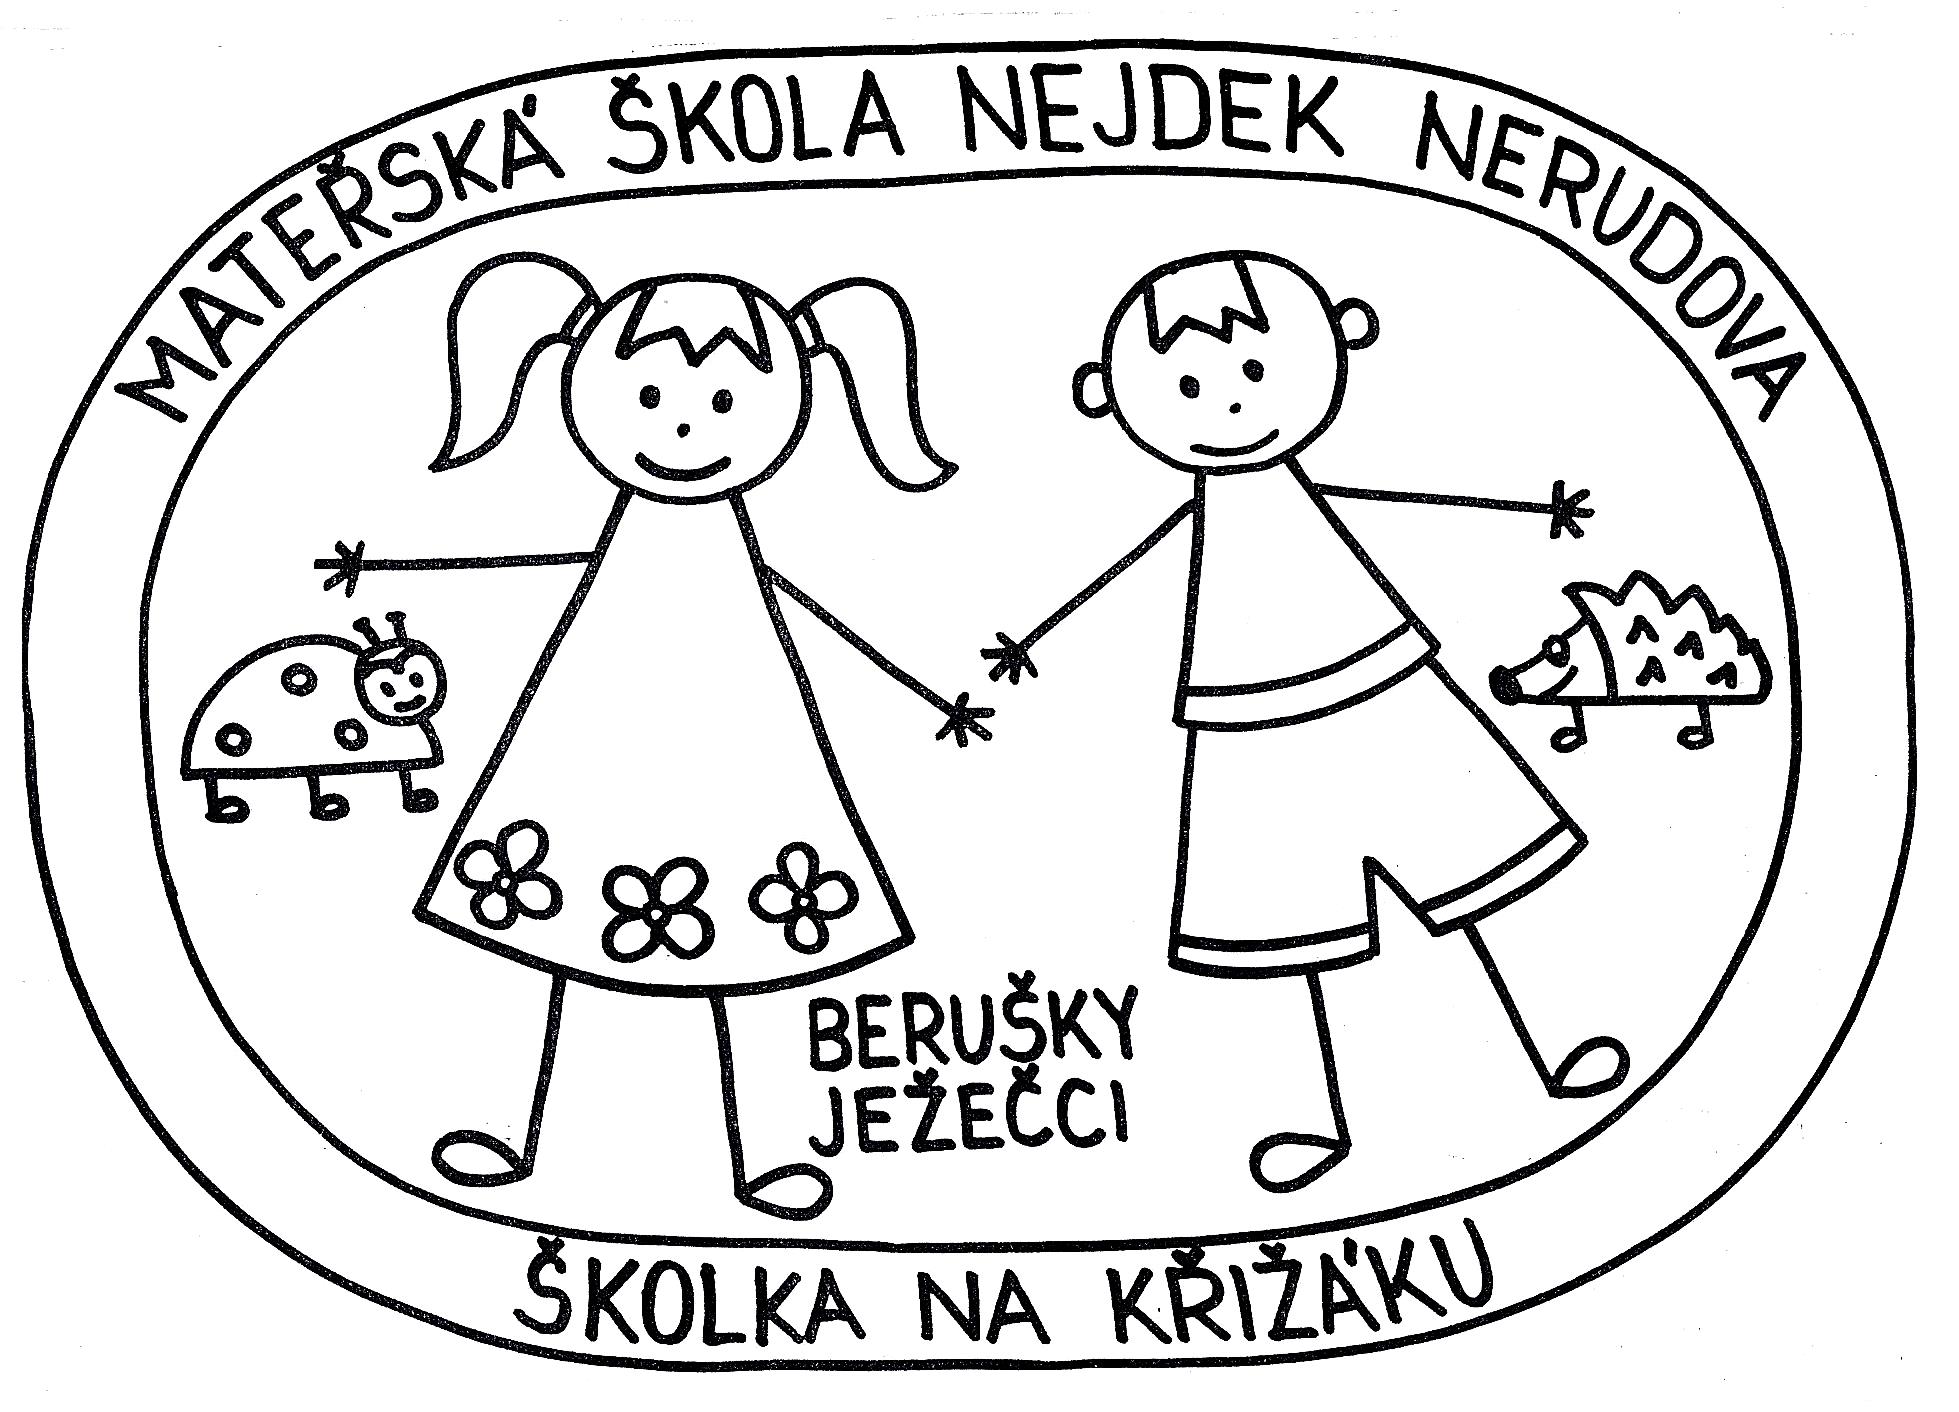 Mateřská škola Nejdek, Nerudova, příspěvková organizace - logo